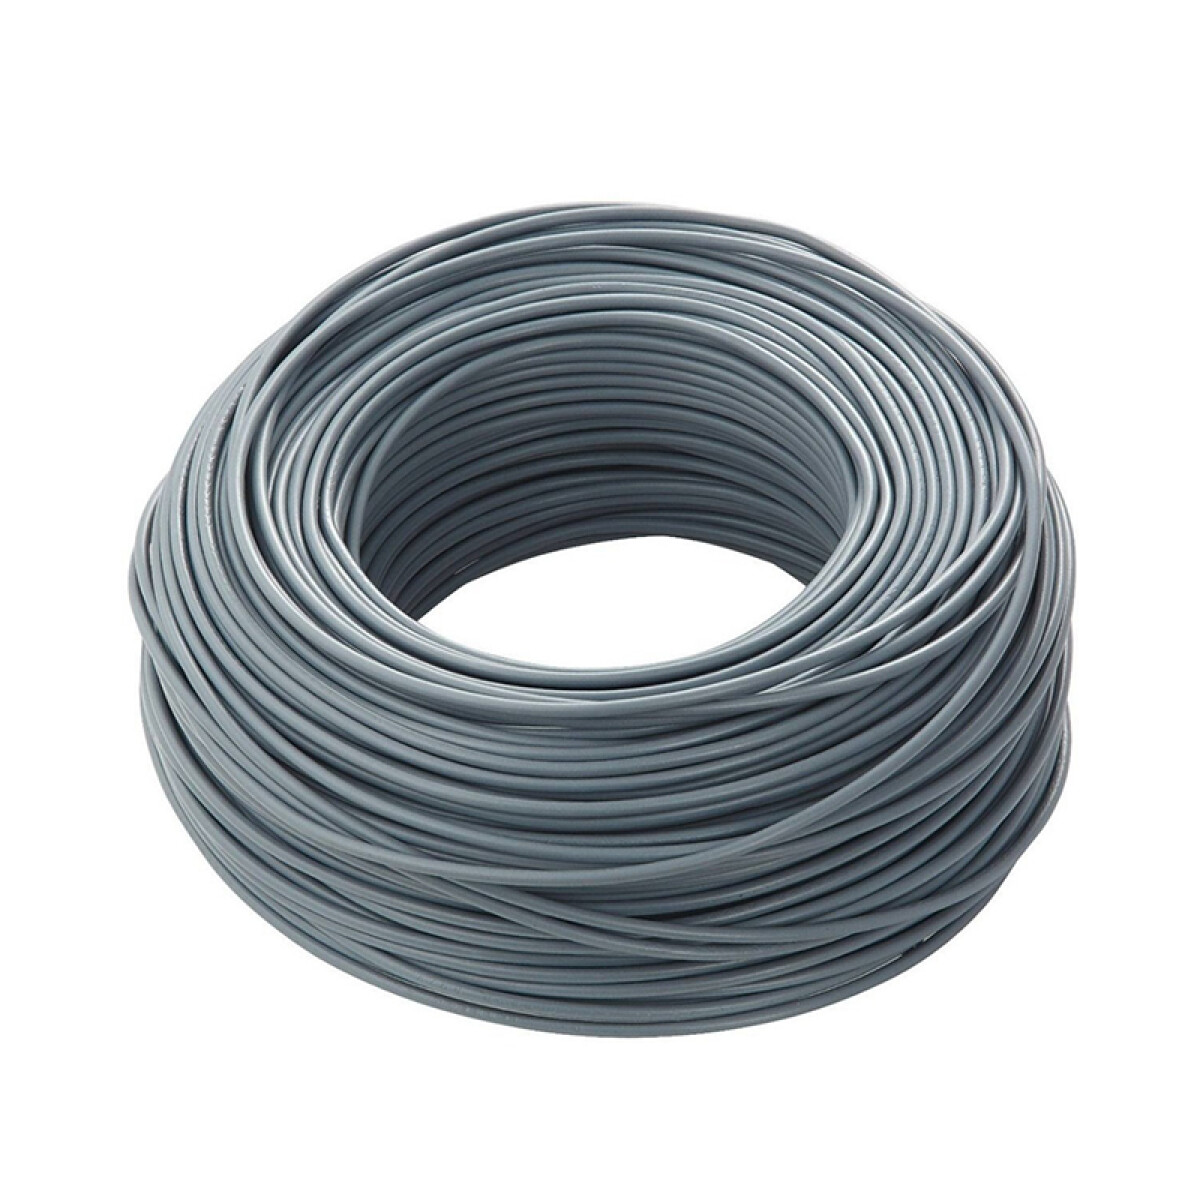 Cable bajo plástico flexible 3x2,5mm² -Rollo 100mt - C95327 